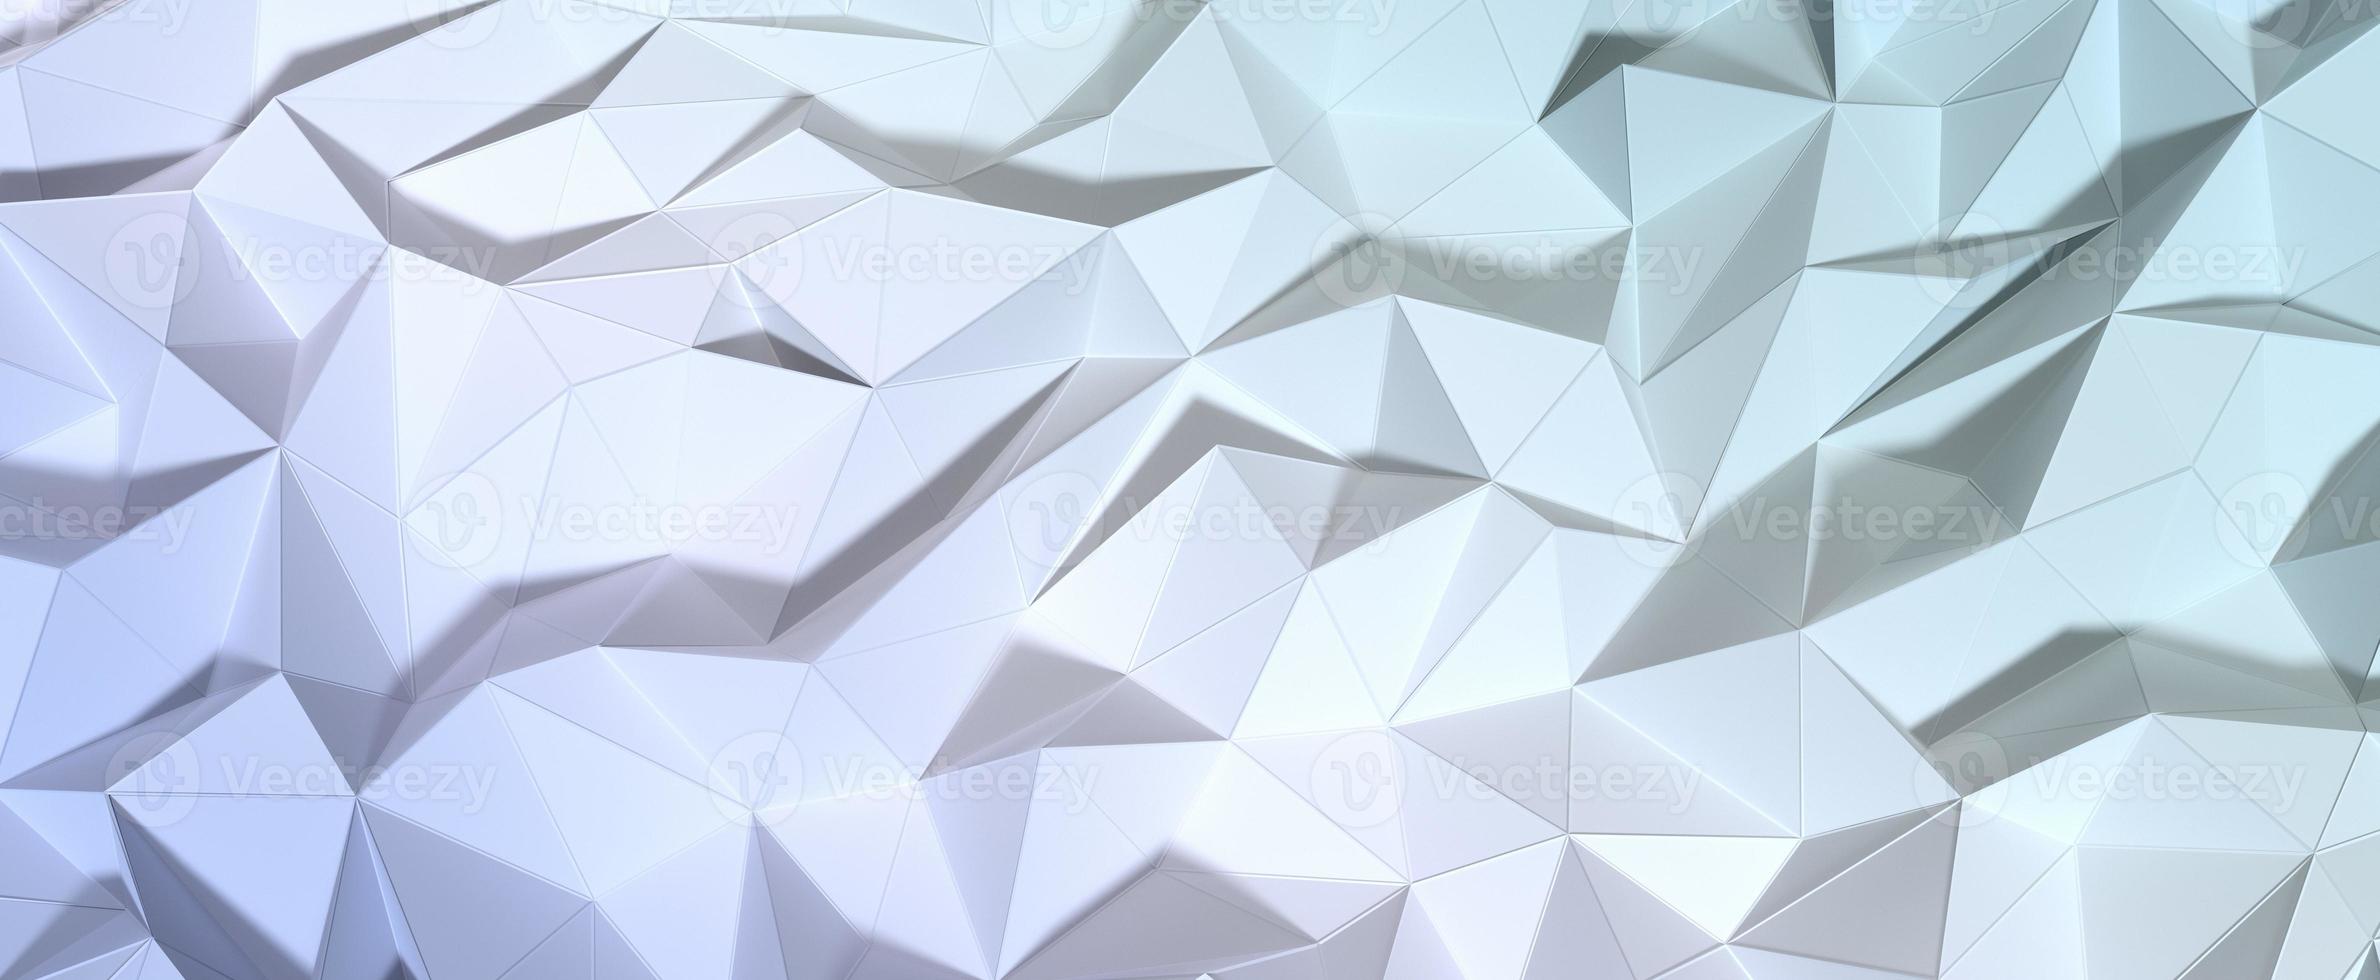 superficie cristallina poligonale con gradiente smorzato. mosaico geometrico a rete di rendering 3d con tonalità beige e argento. trame digitali triangolari impilate in formazioni creative con interni futuristici foto